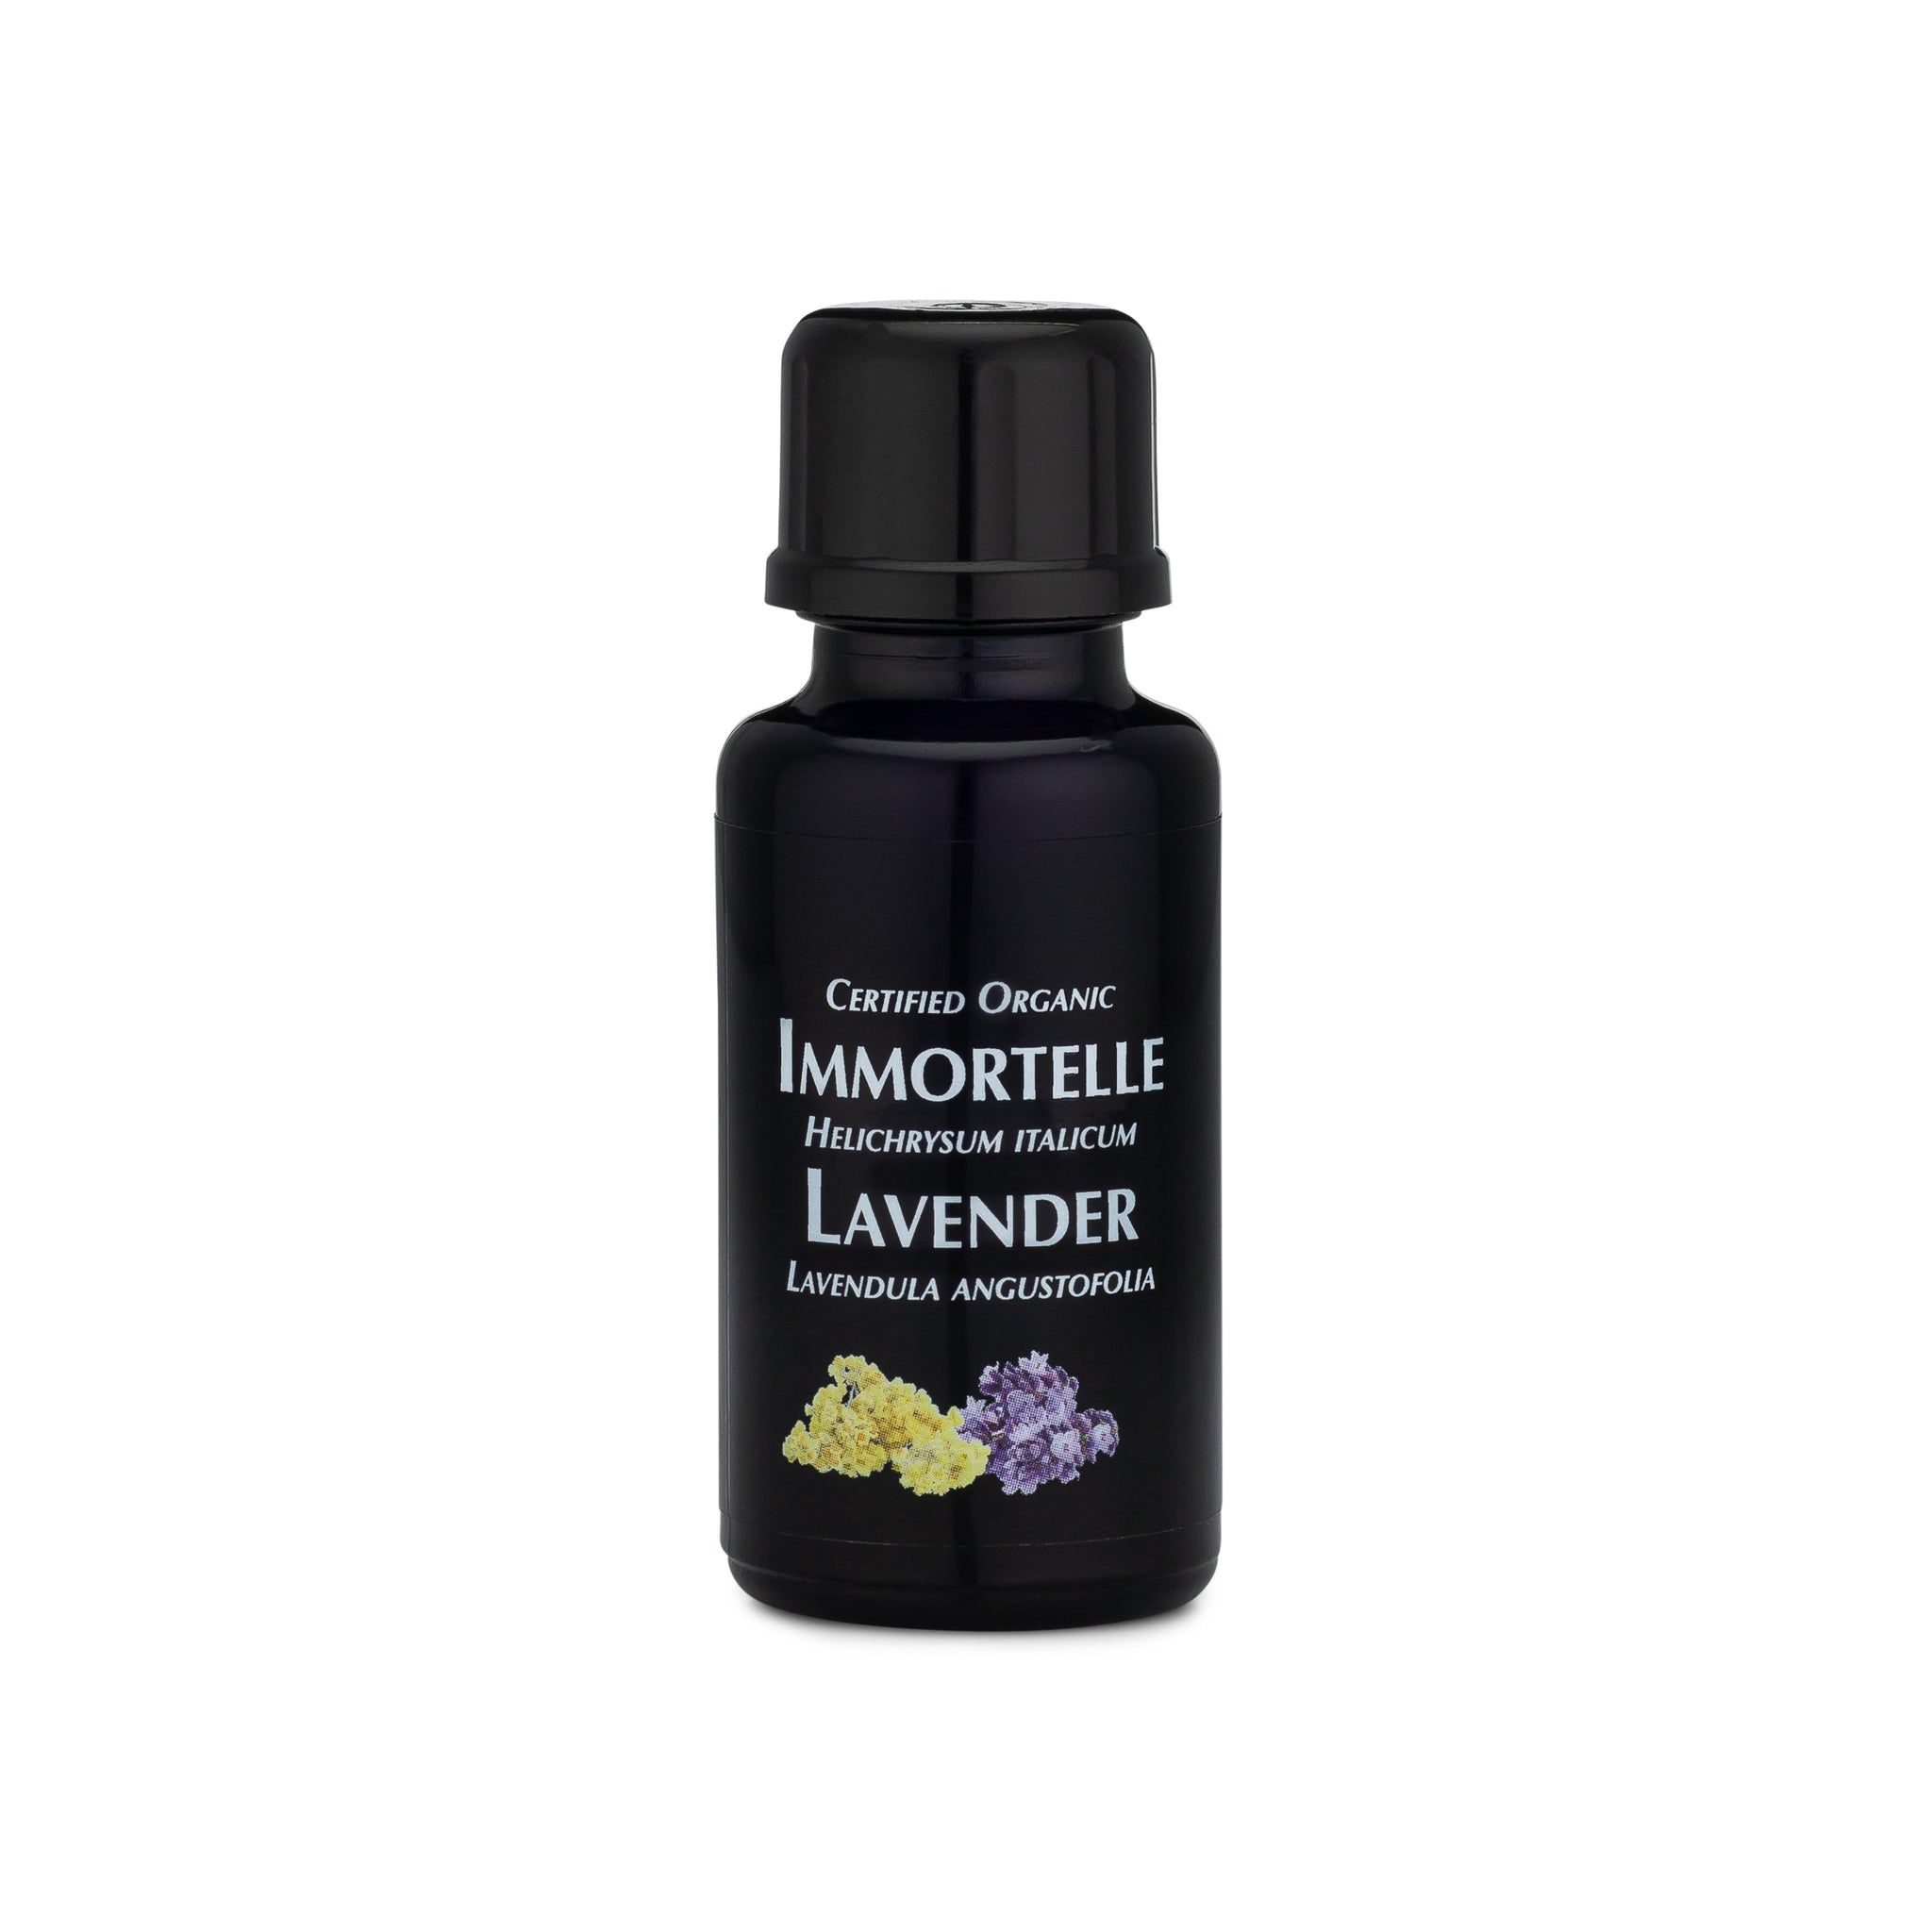 Lavender Essential Oil – Benedetta Skin Care